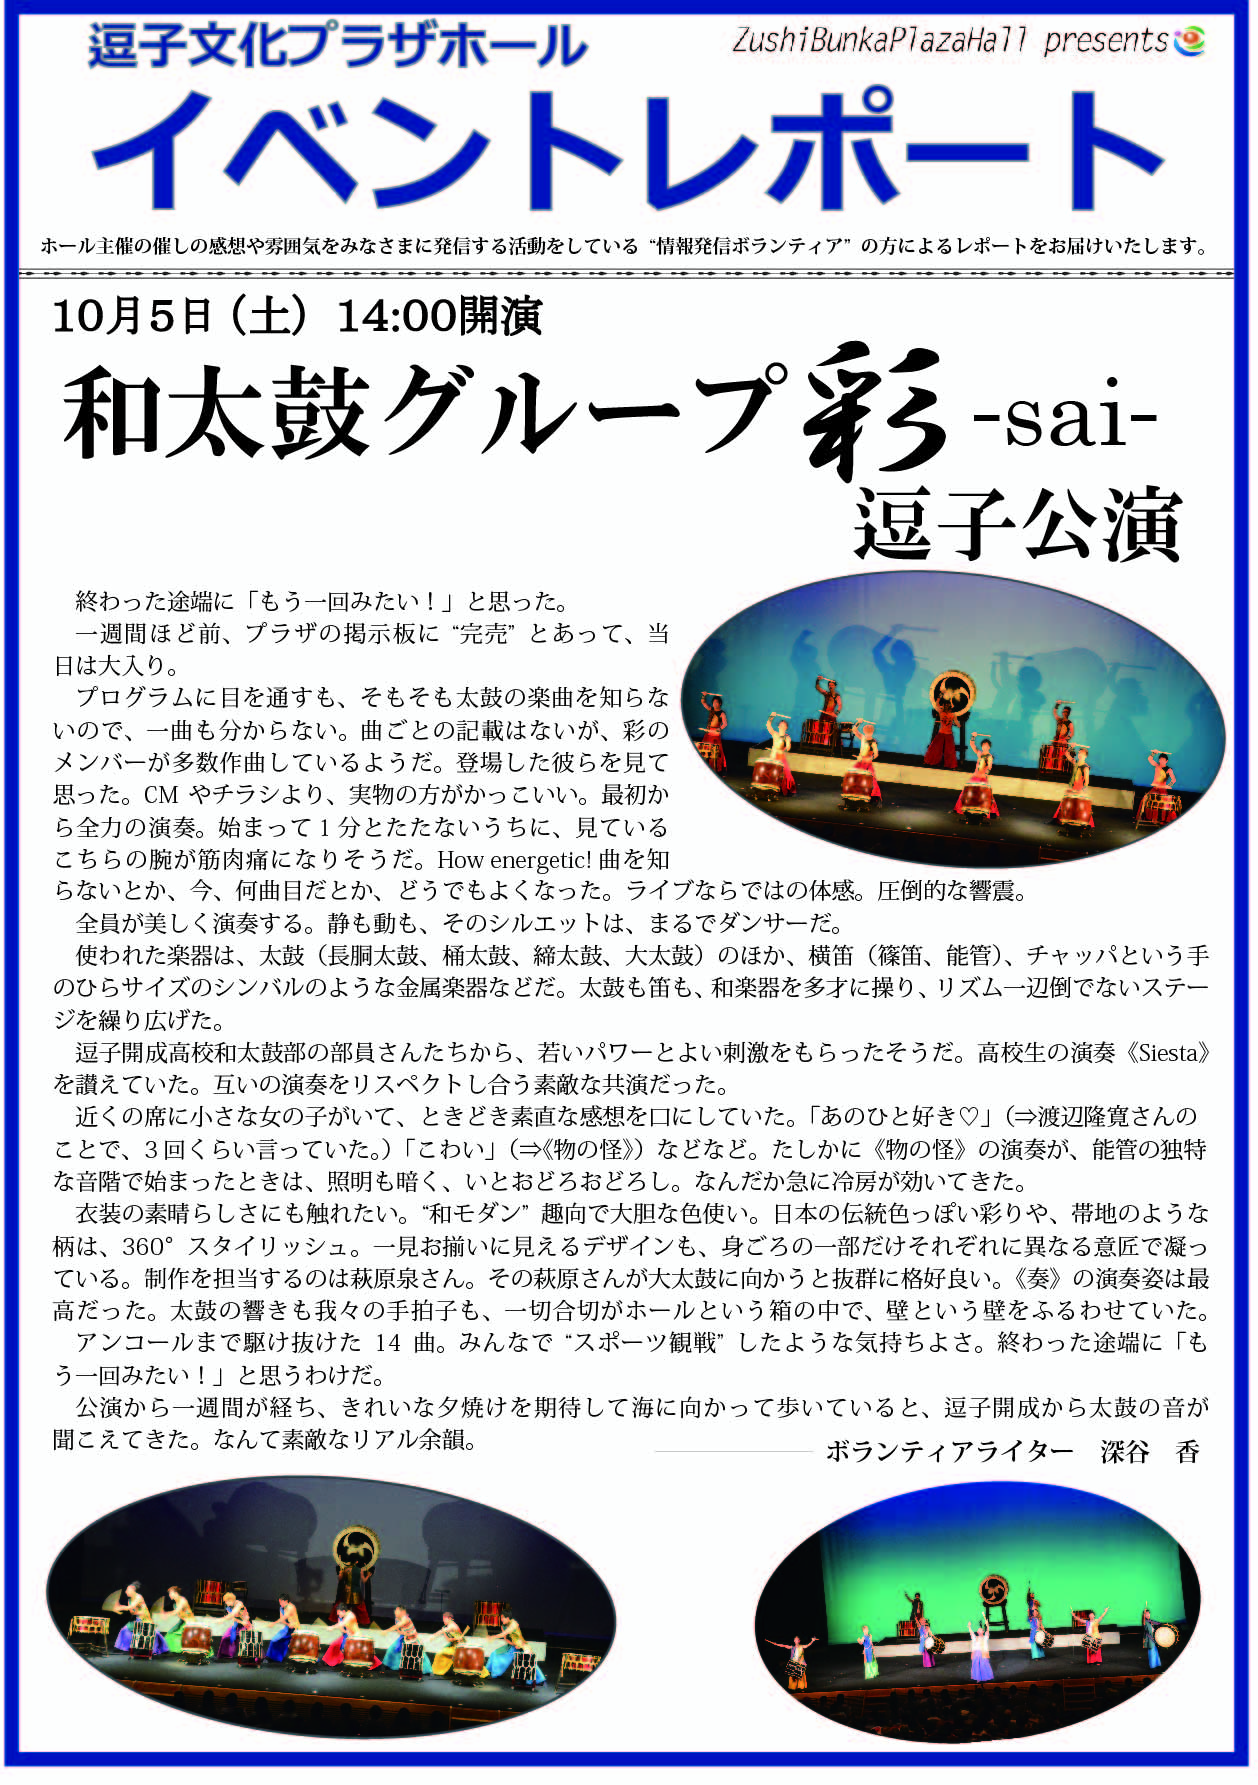 イベントレポート「和太鼓グループ彩-sai- 逗子公演」2019年10月5日（土）開催